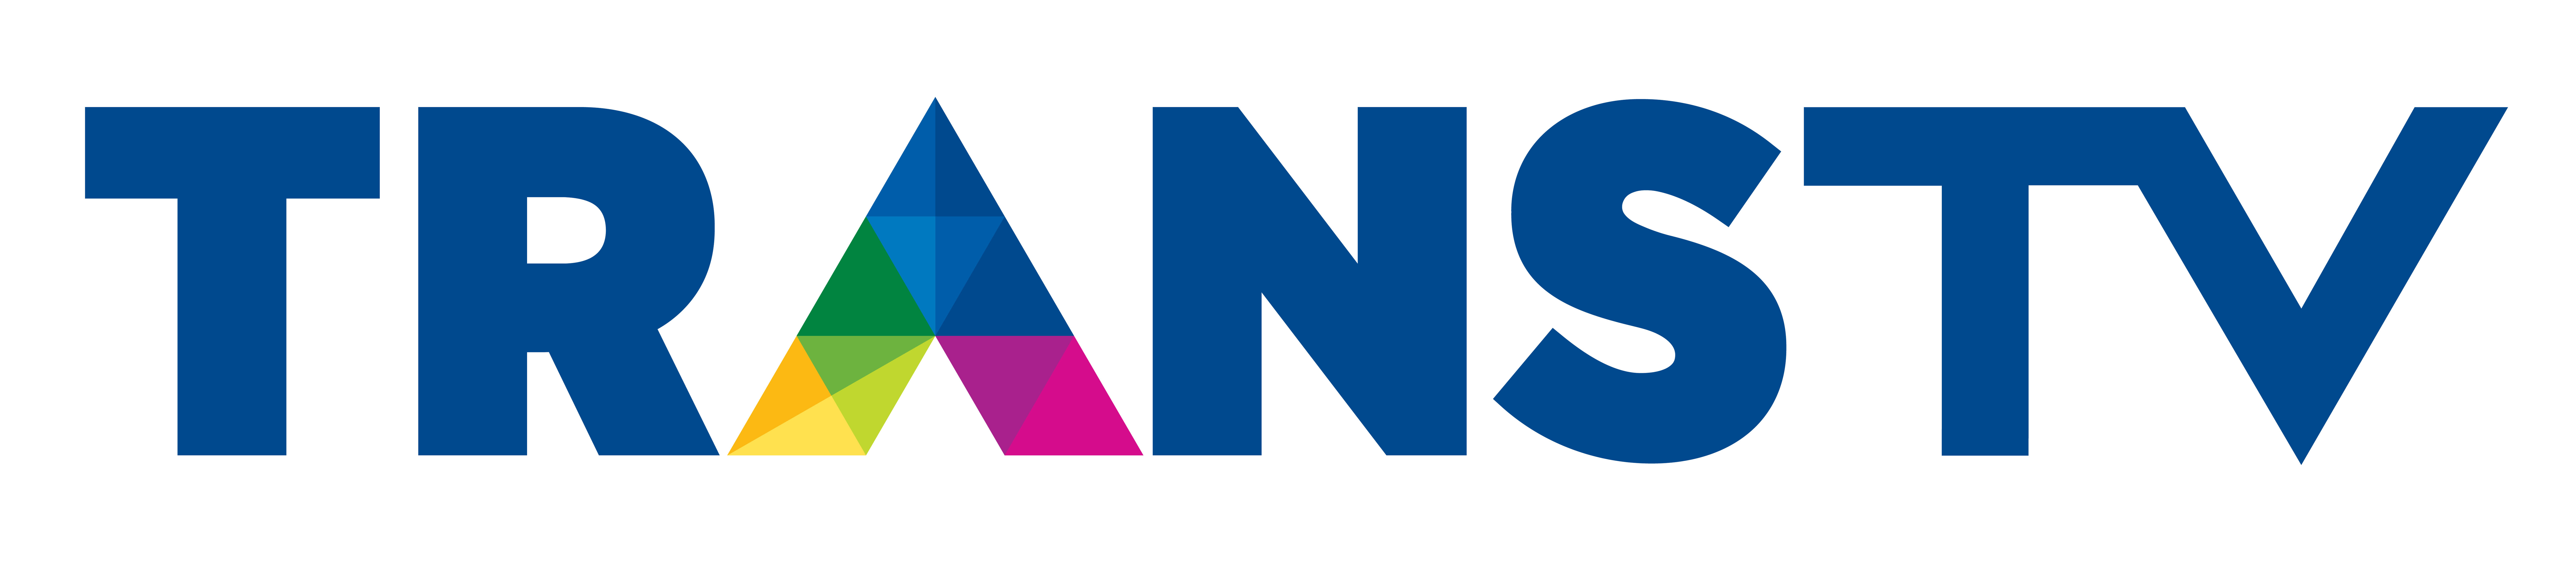 logo_trans_tv_big